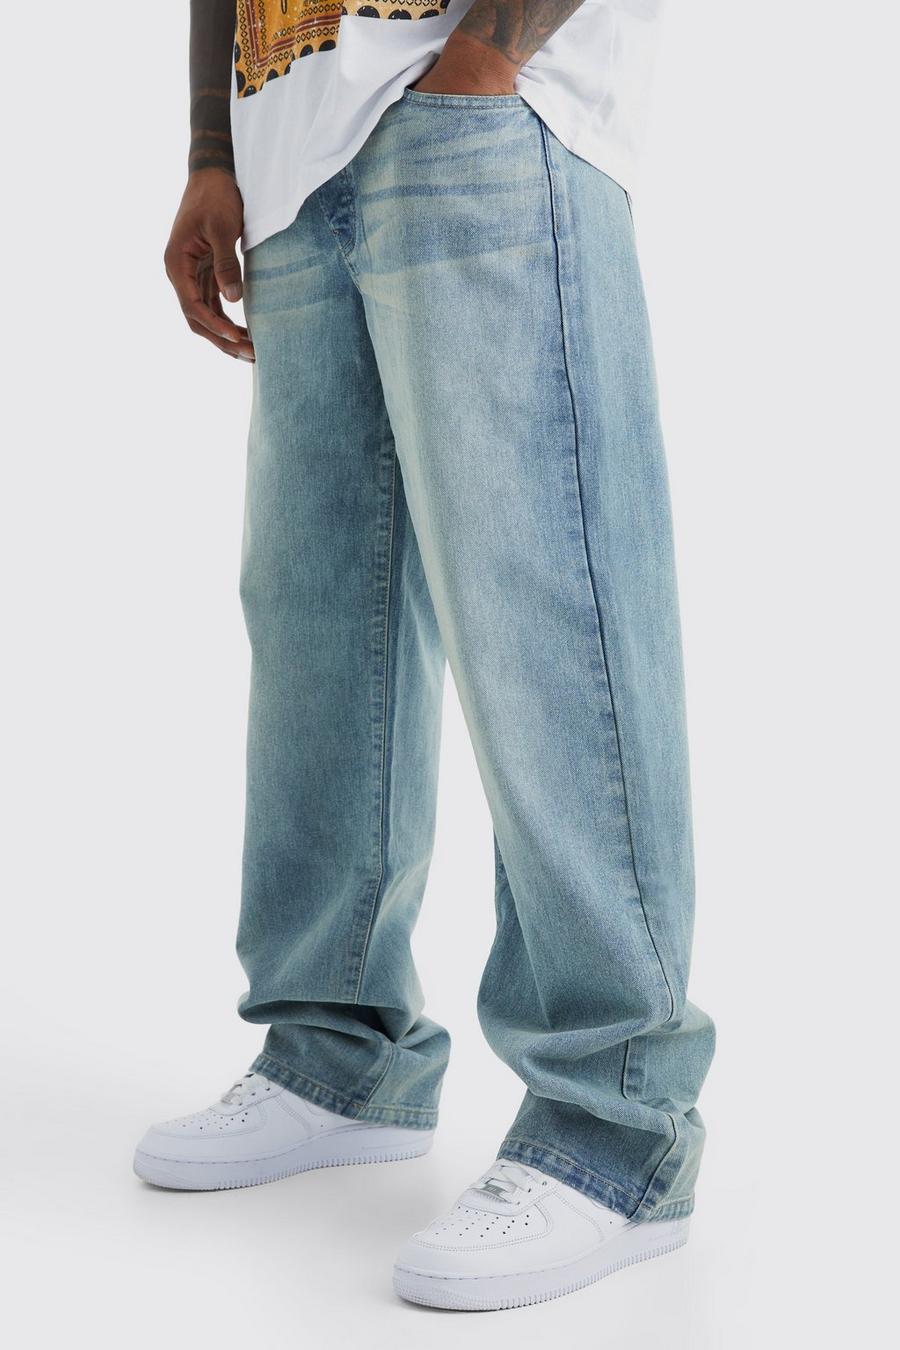 Lockere Jeans, Antique blue